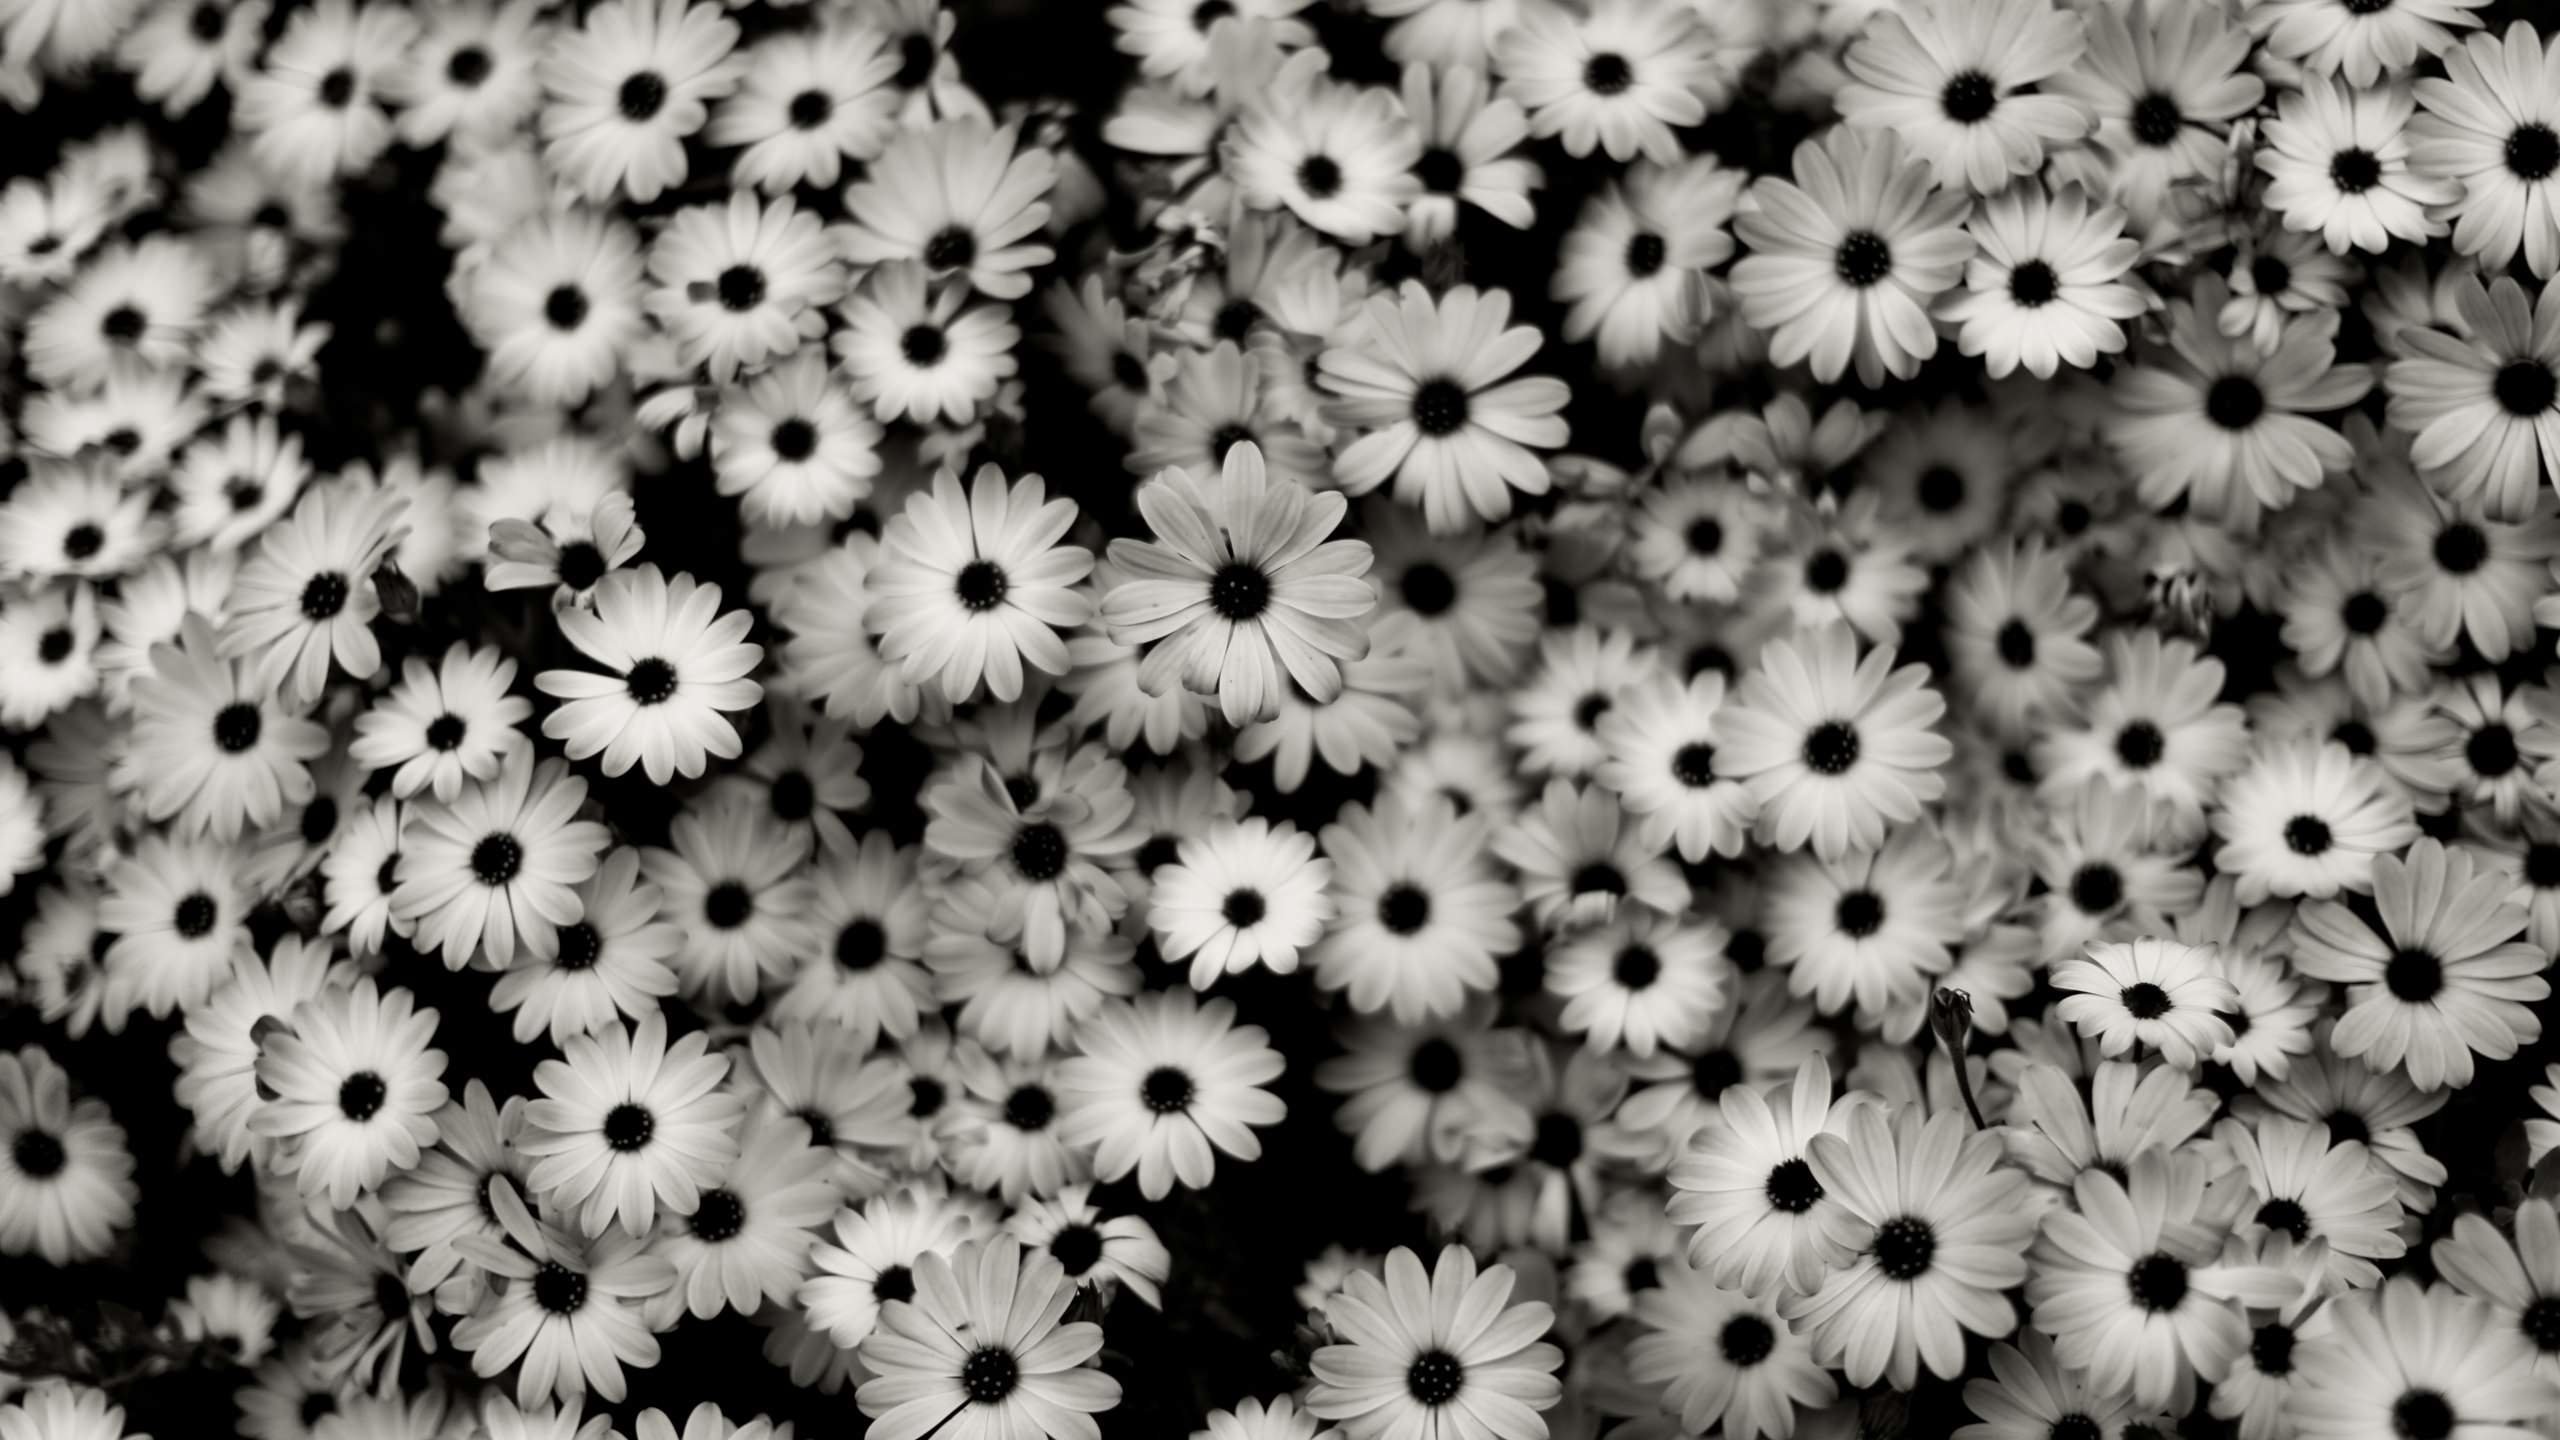 Black & White Daisies Wallpaper for Desktop 2560x1440